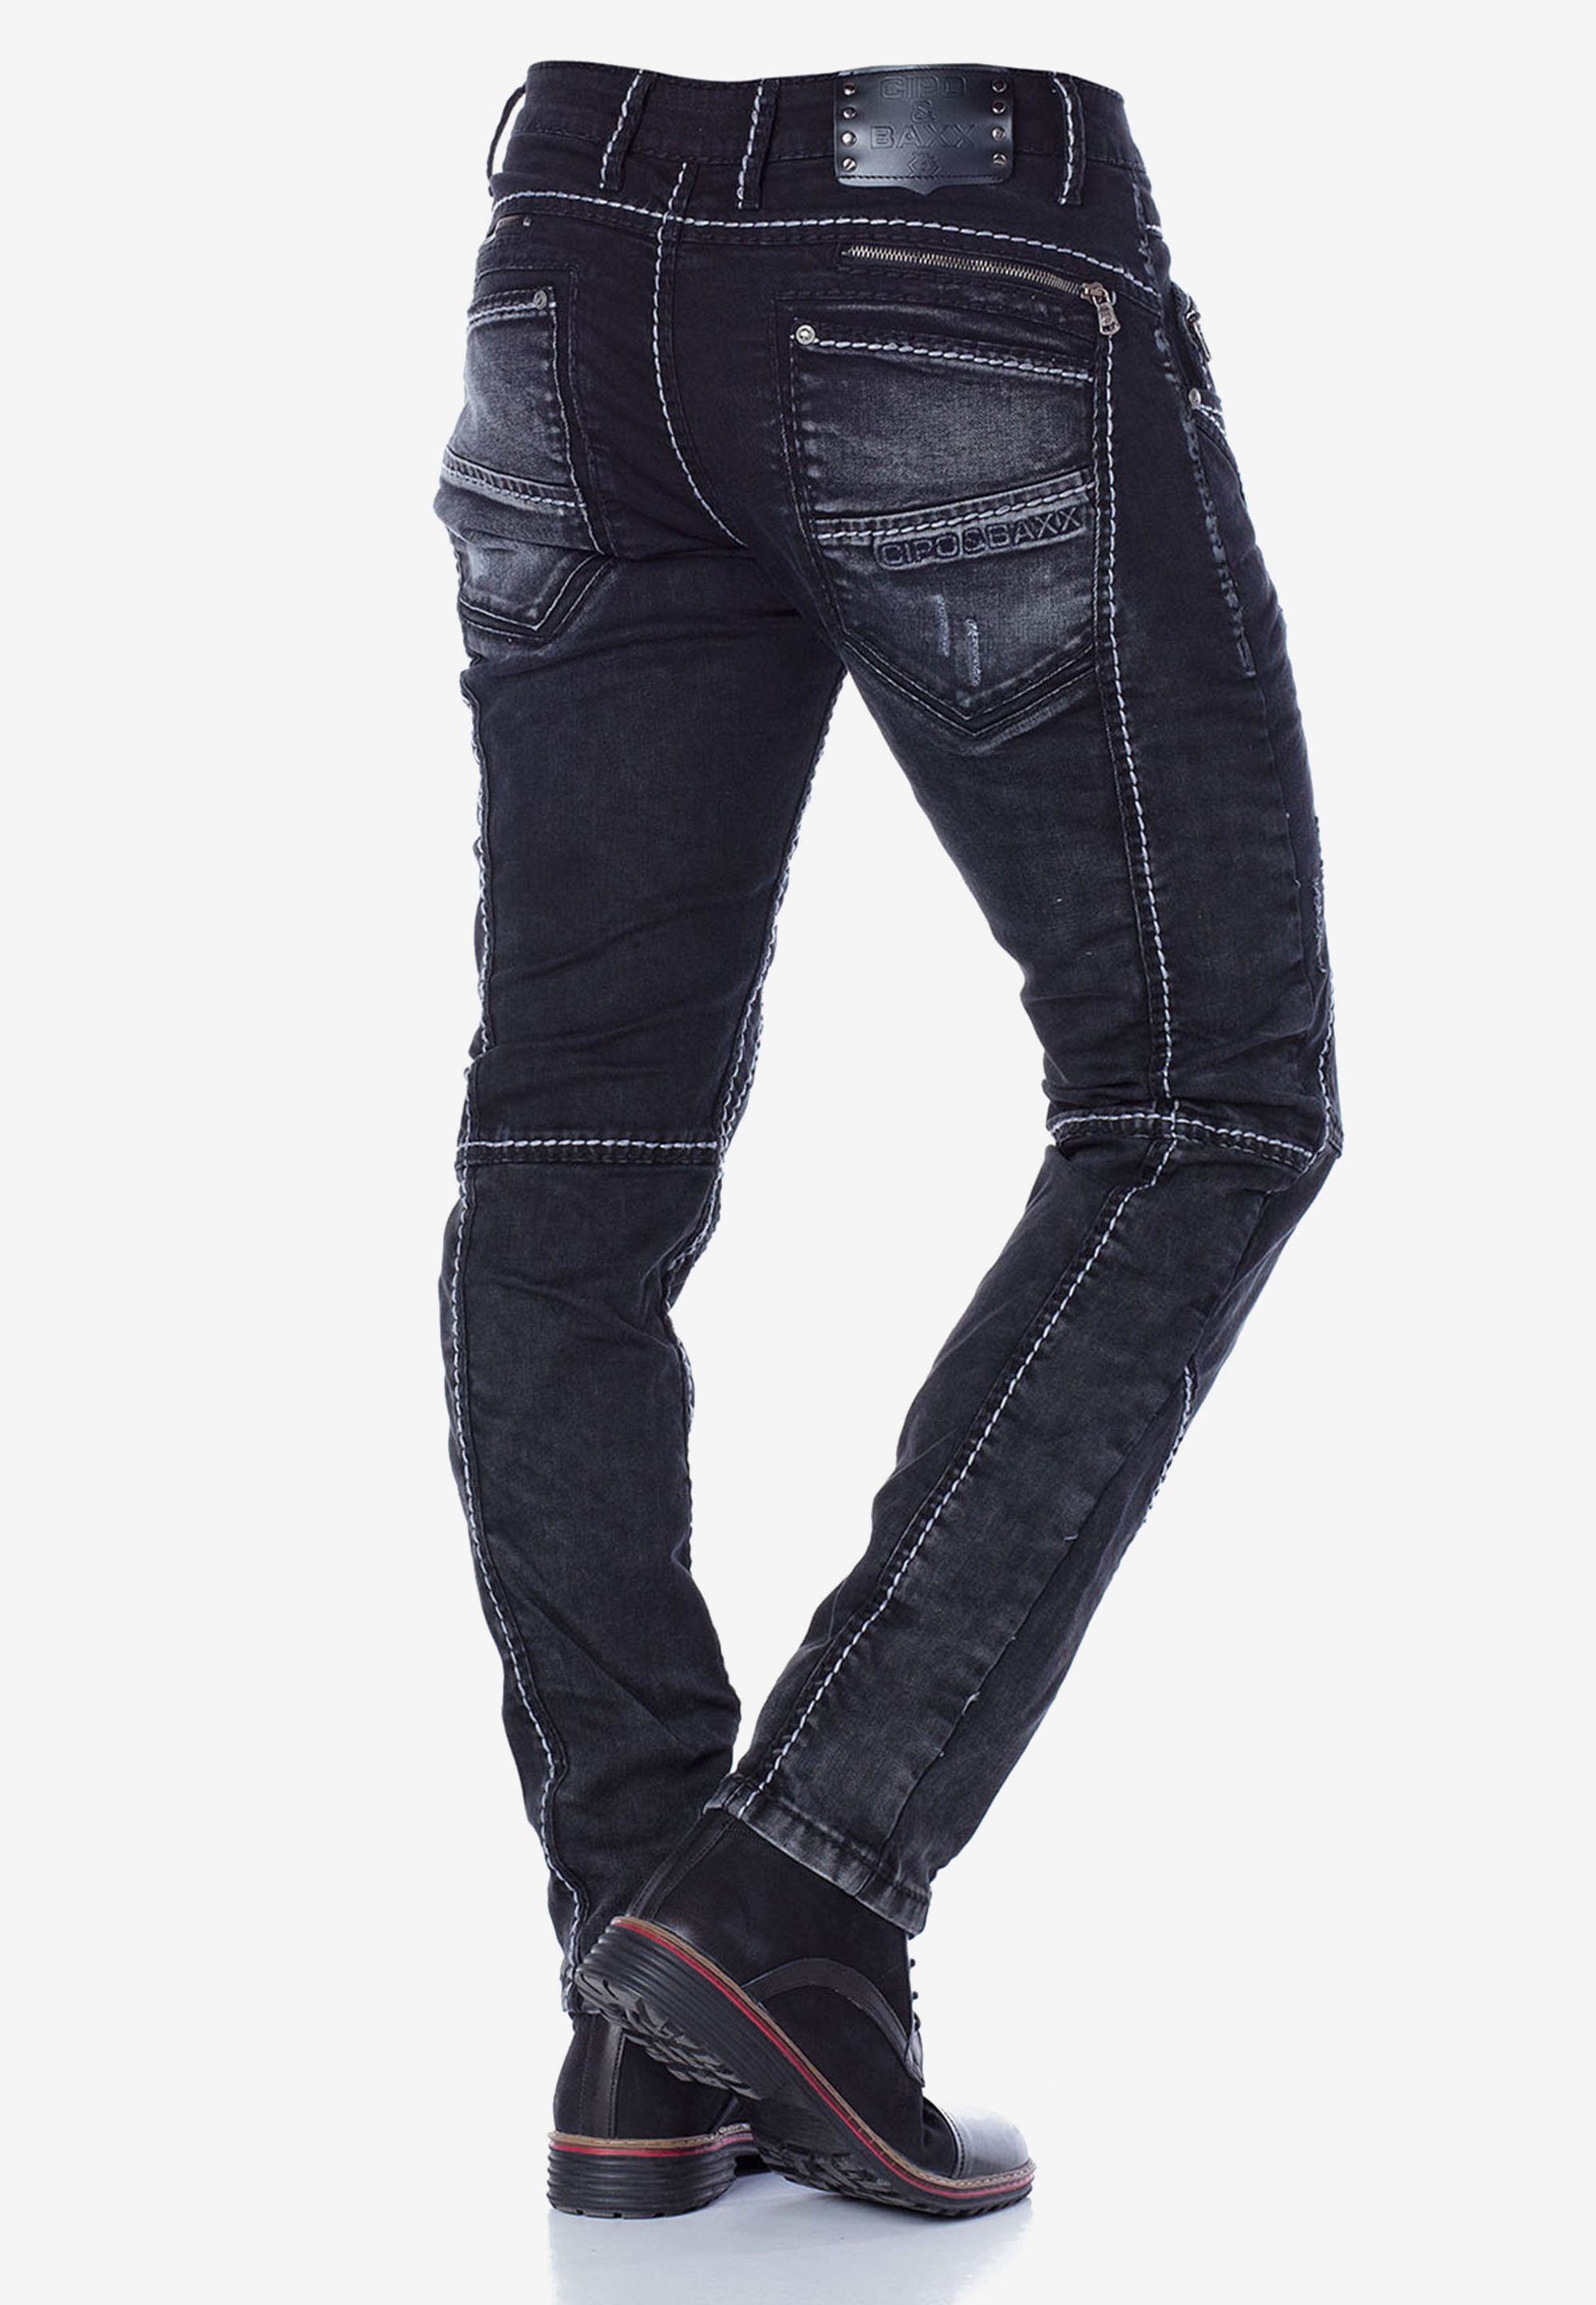 & Fit Straight mit Teilungsnähten extravaganten Baxx in Cipo Jeans Bequeme